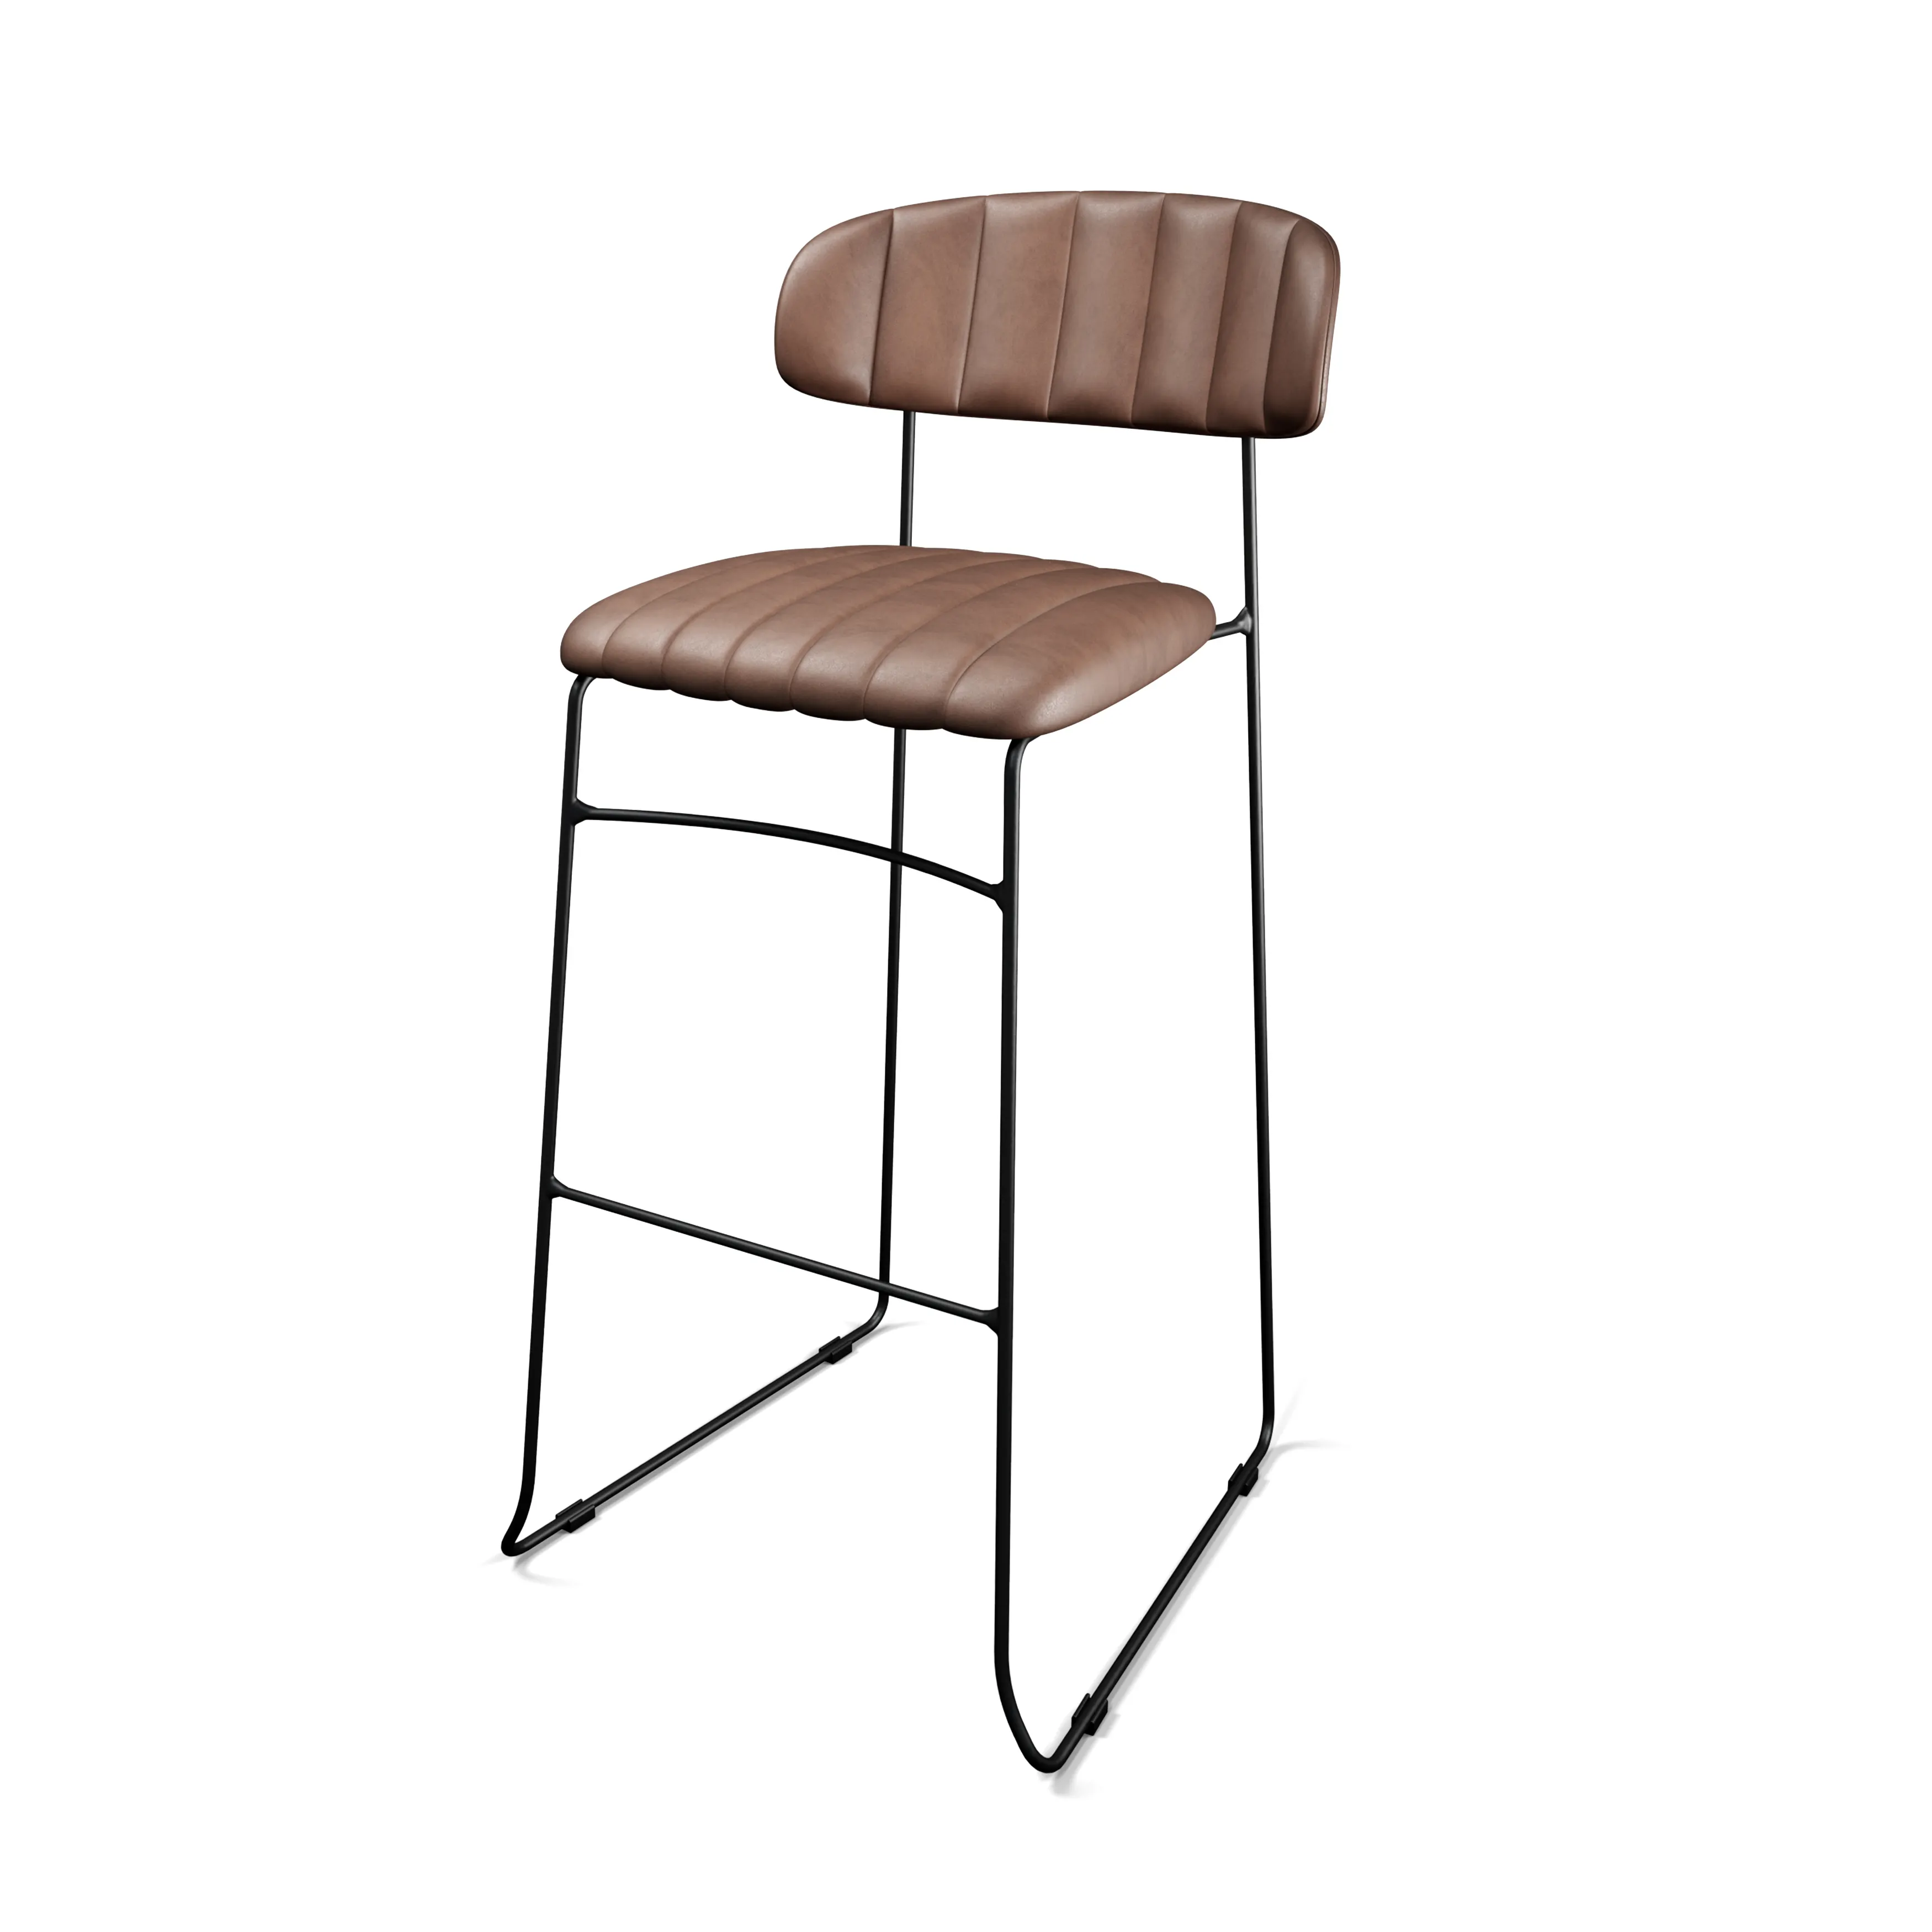 Commercio all'ingrosso unico alla moda sedia in pelle artificiale mobili Design moderno sala da pranzo sedia da Bar produzione in pelle PU